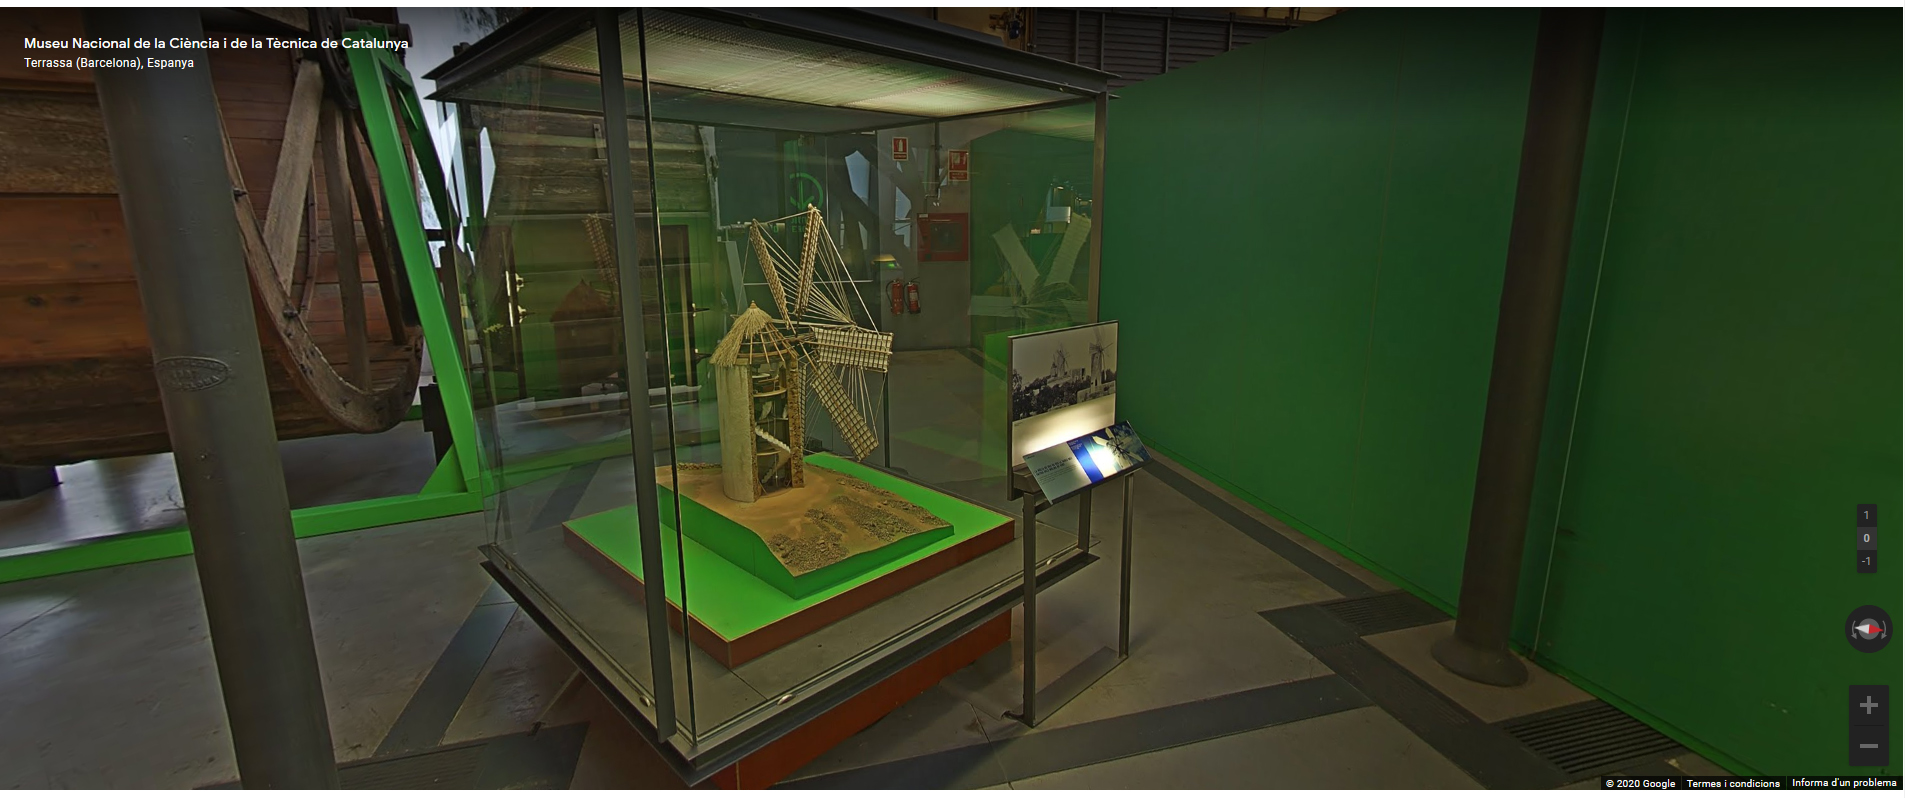 Visita virtual al Museu de la Ciència i la Tècnica de Catalunya